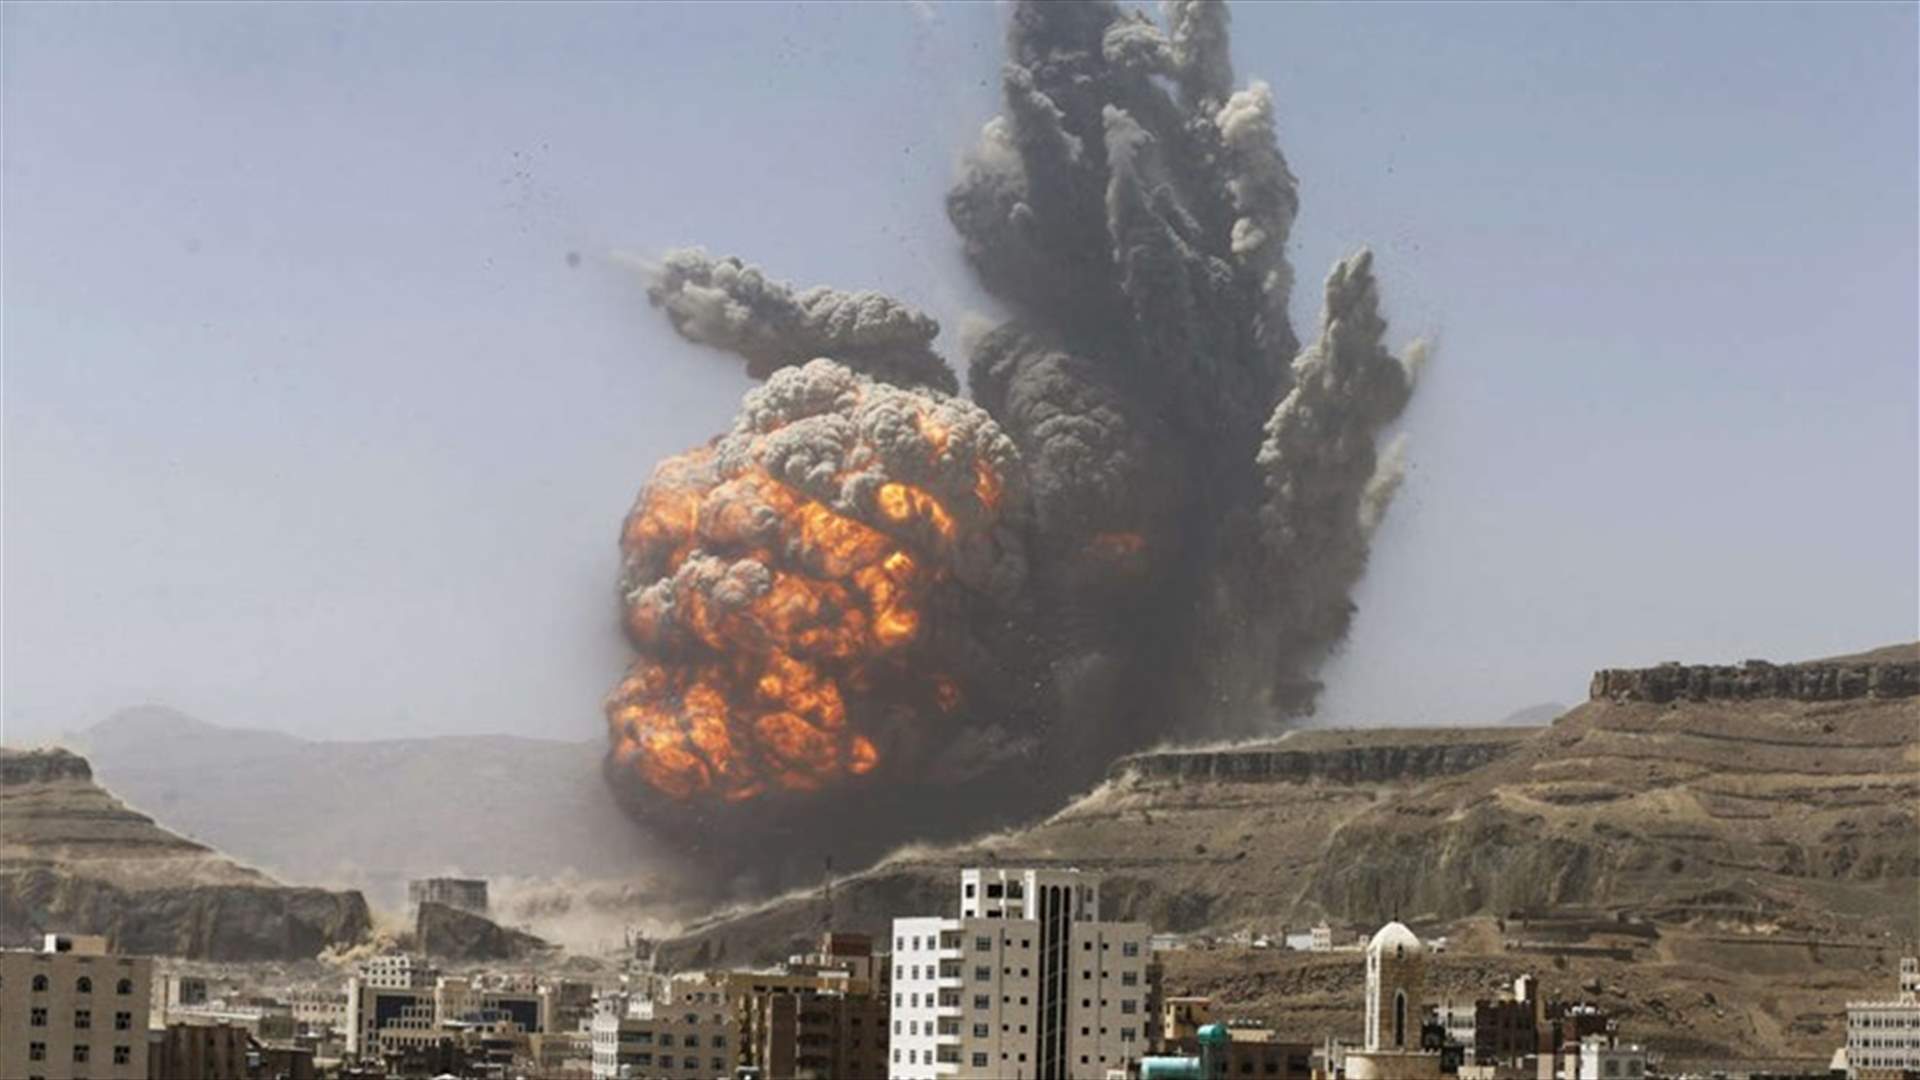 Suspected US drones hit al Qaeda targets in Yemen - residents